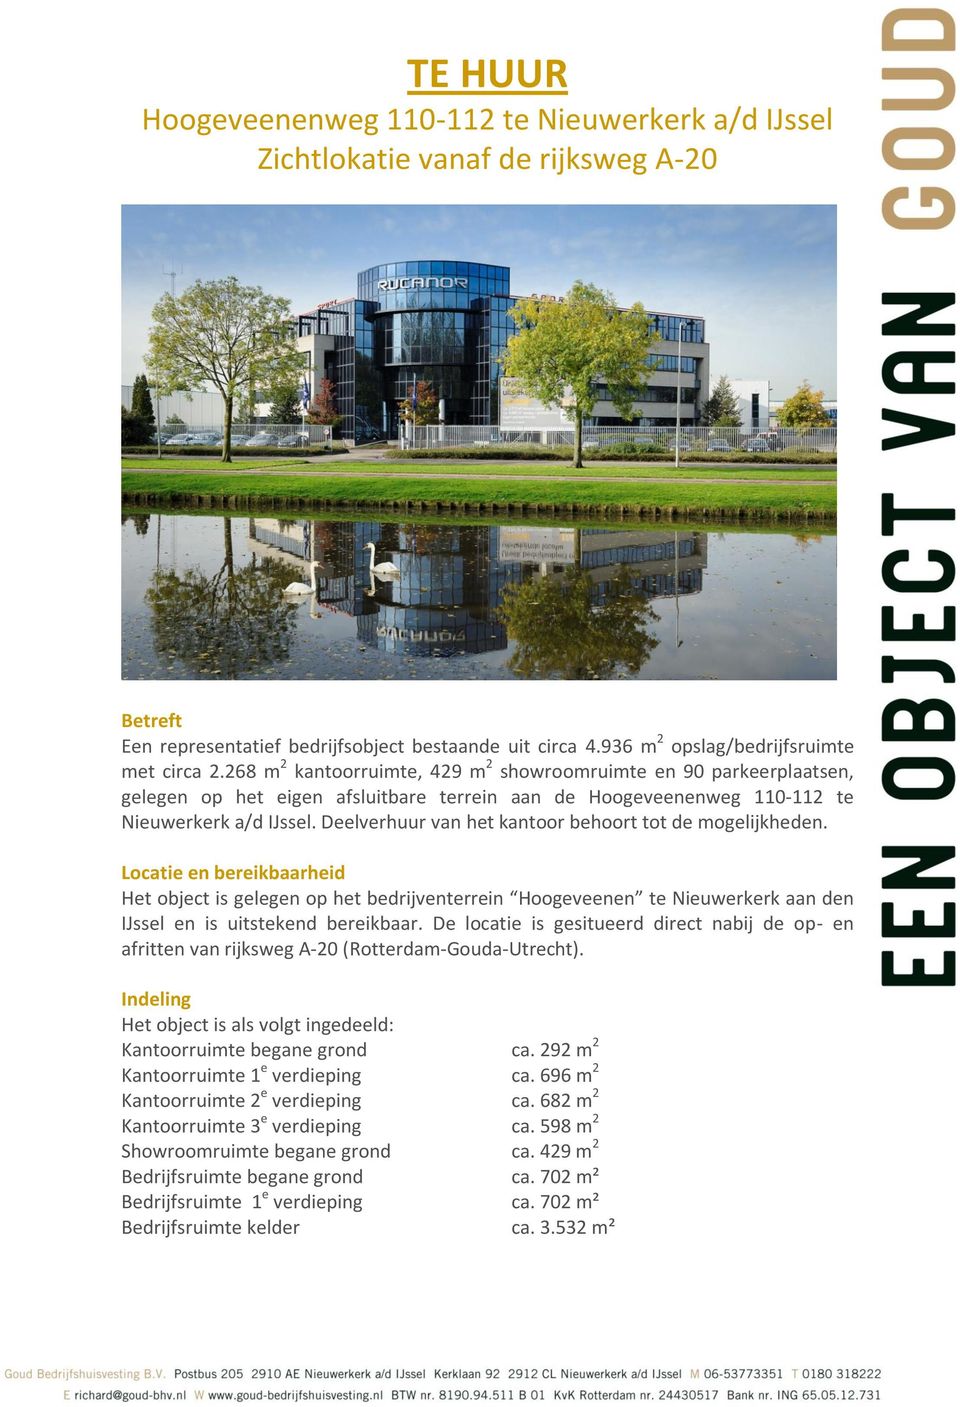 Deelverhuur van het kantoor behoort tot de mogelijkheden. Locatie en bereikbaarheid Het object is gelegen op het bedrijventerrein Hoogeveenen te Nieuwerkerk aan den IJssel en is uitstekend bereikbaar.